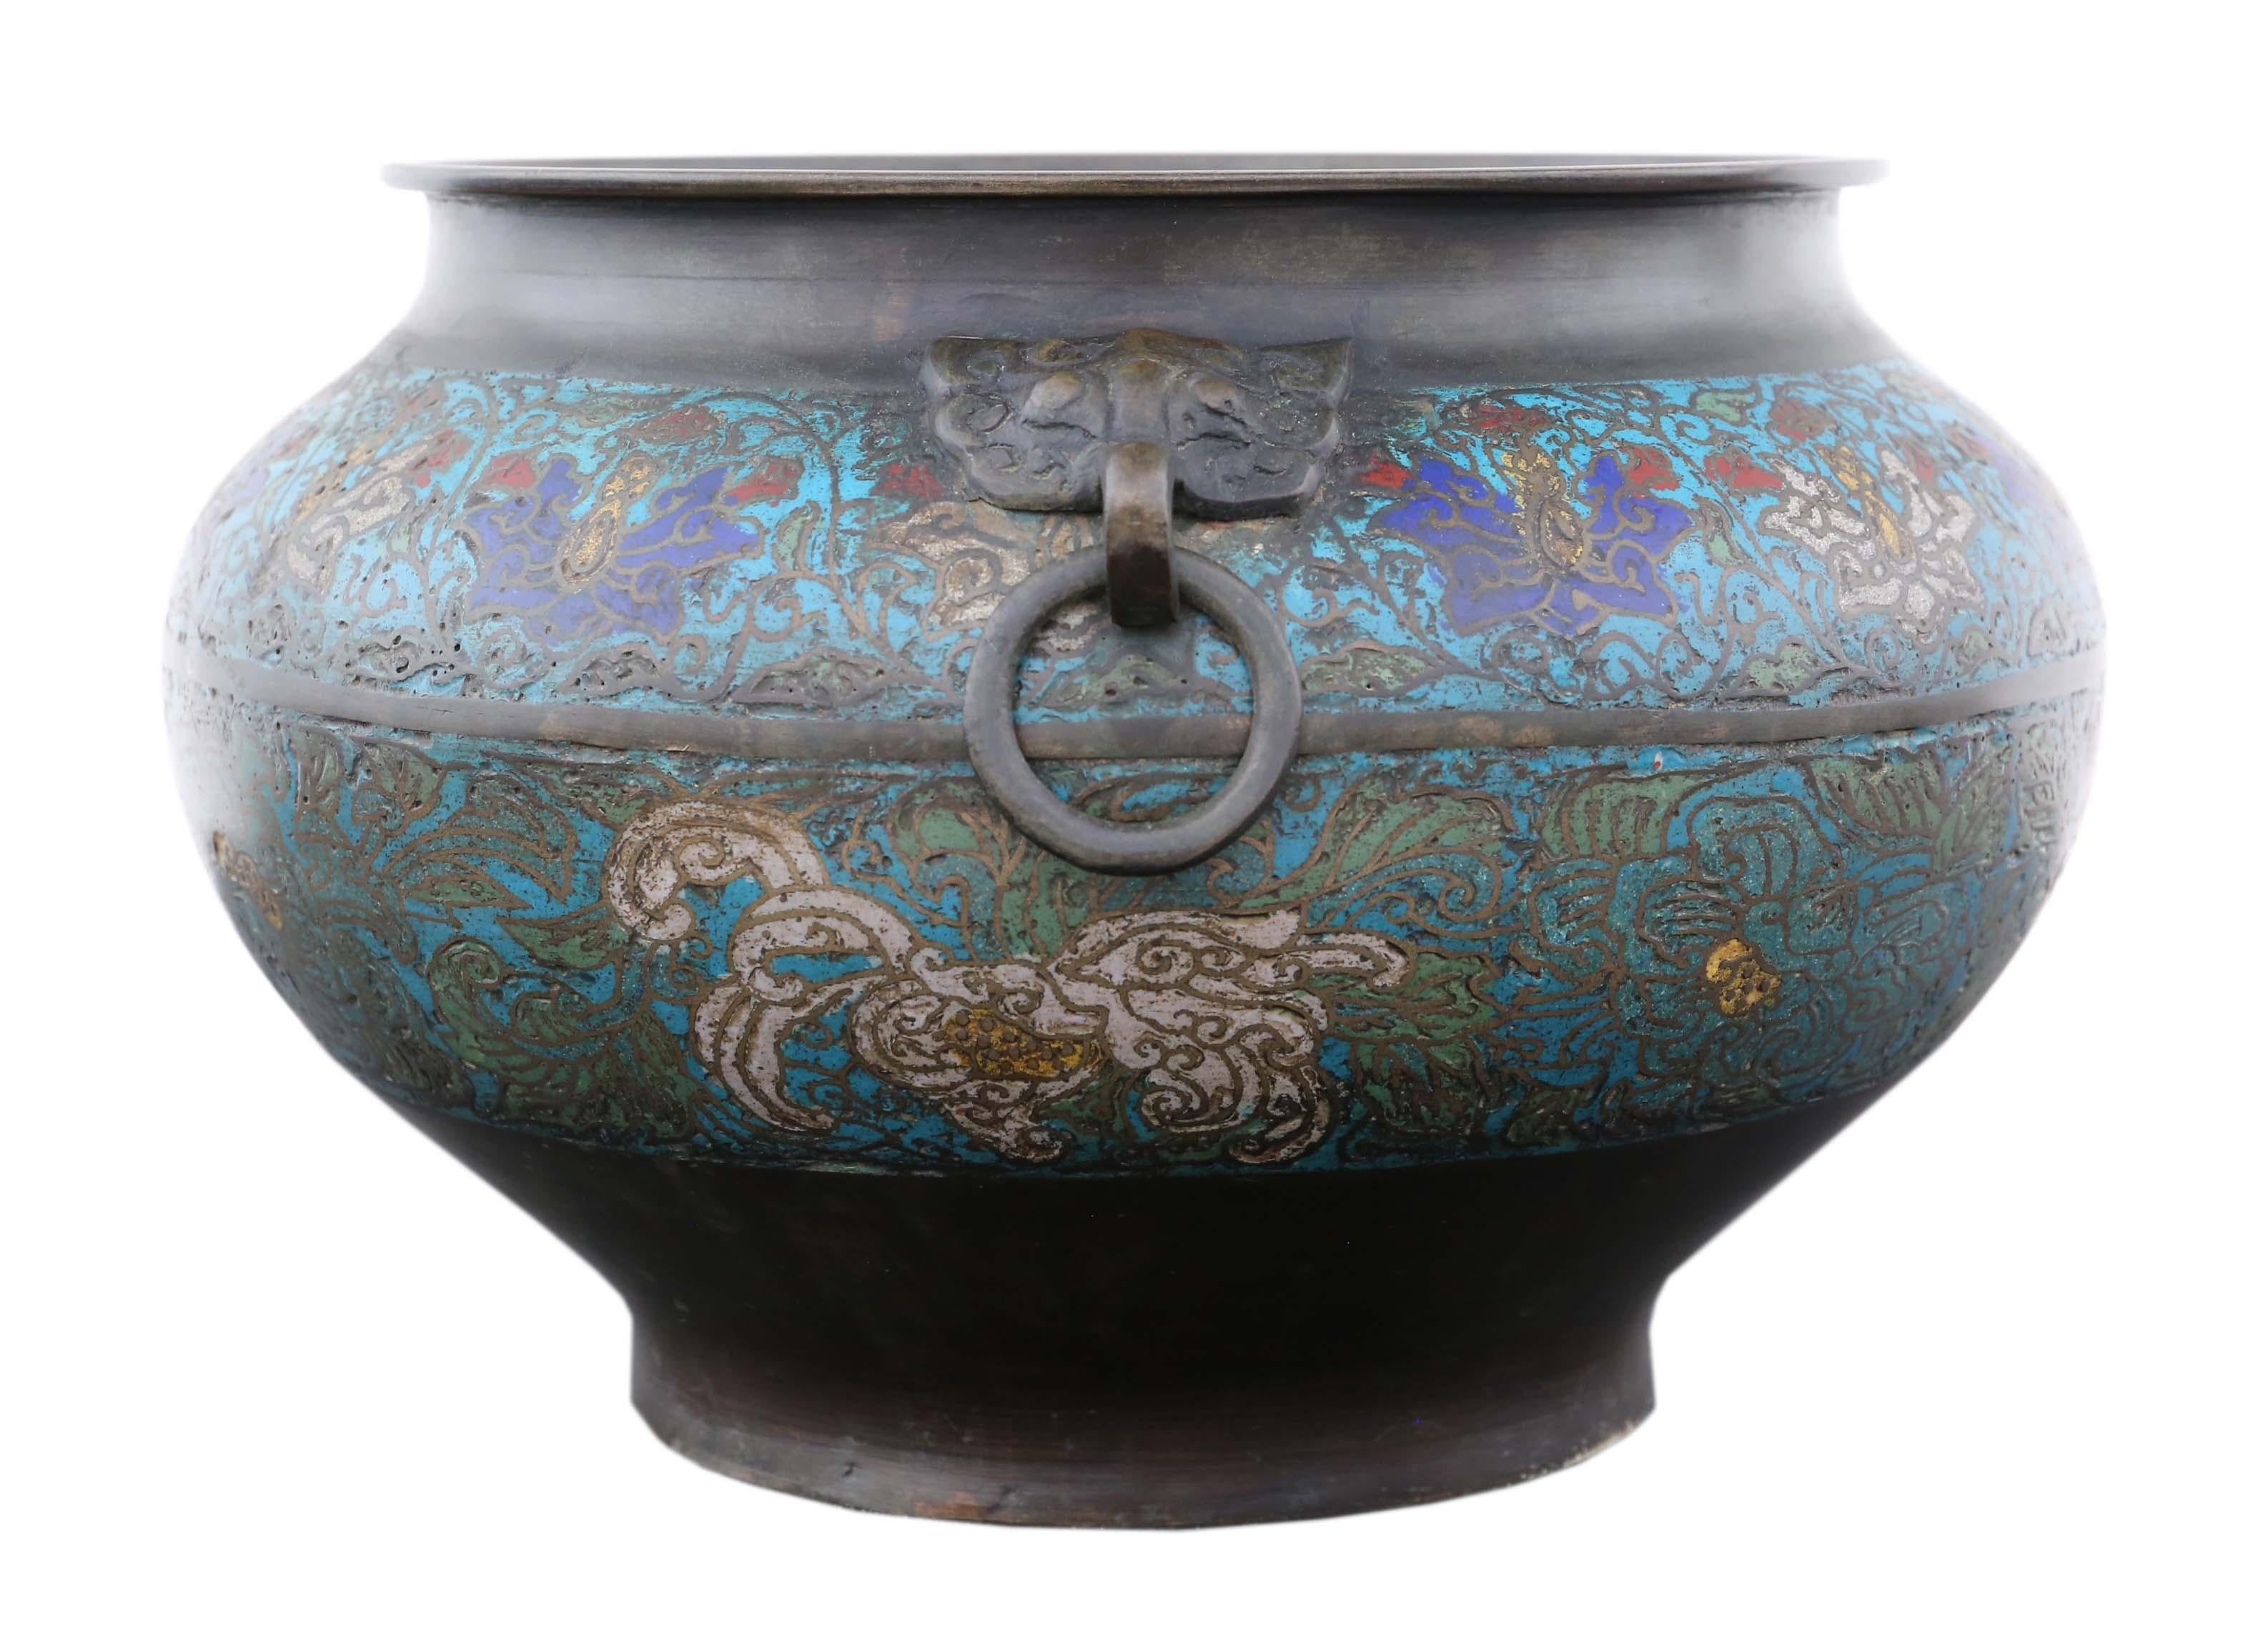 Antike große Qualität chinesische Bronze champlevé Pflanzer Schüssel etwa Ende des 19. Jahrhunderts. Möglicherweise handelt es sich um ein japanisches Modell im chinesischen Stil aus derselben Zeit. Auf dem Sockel befindet sich ein